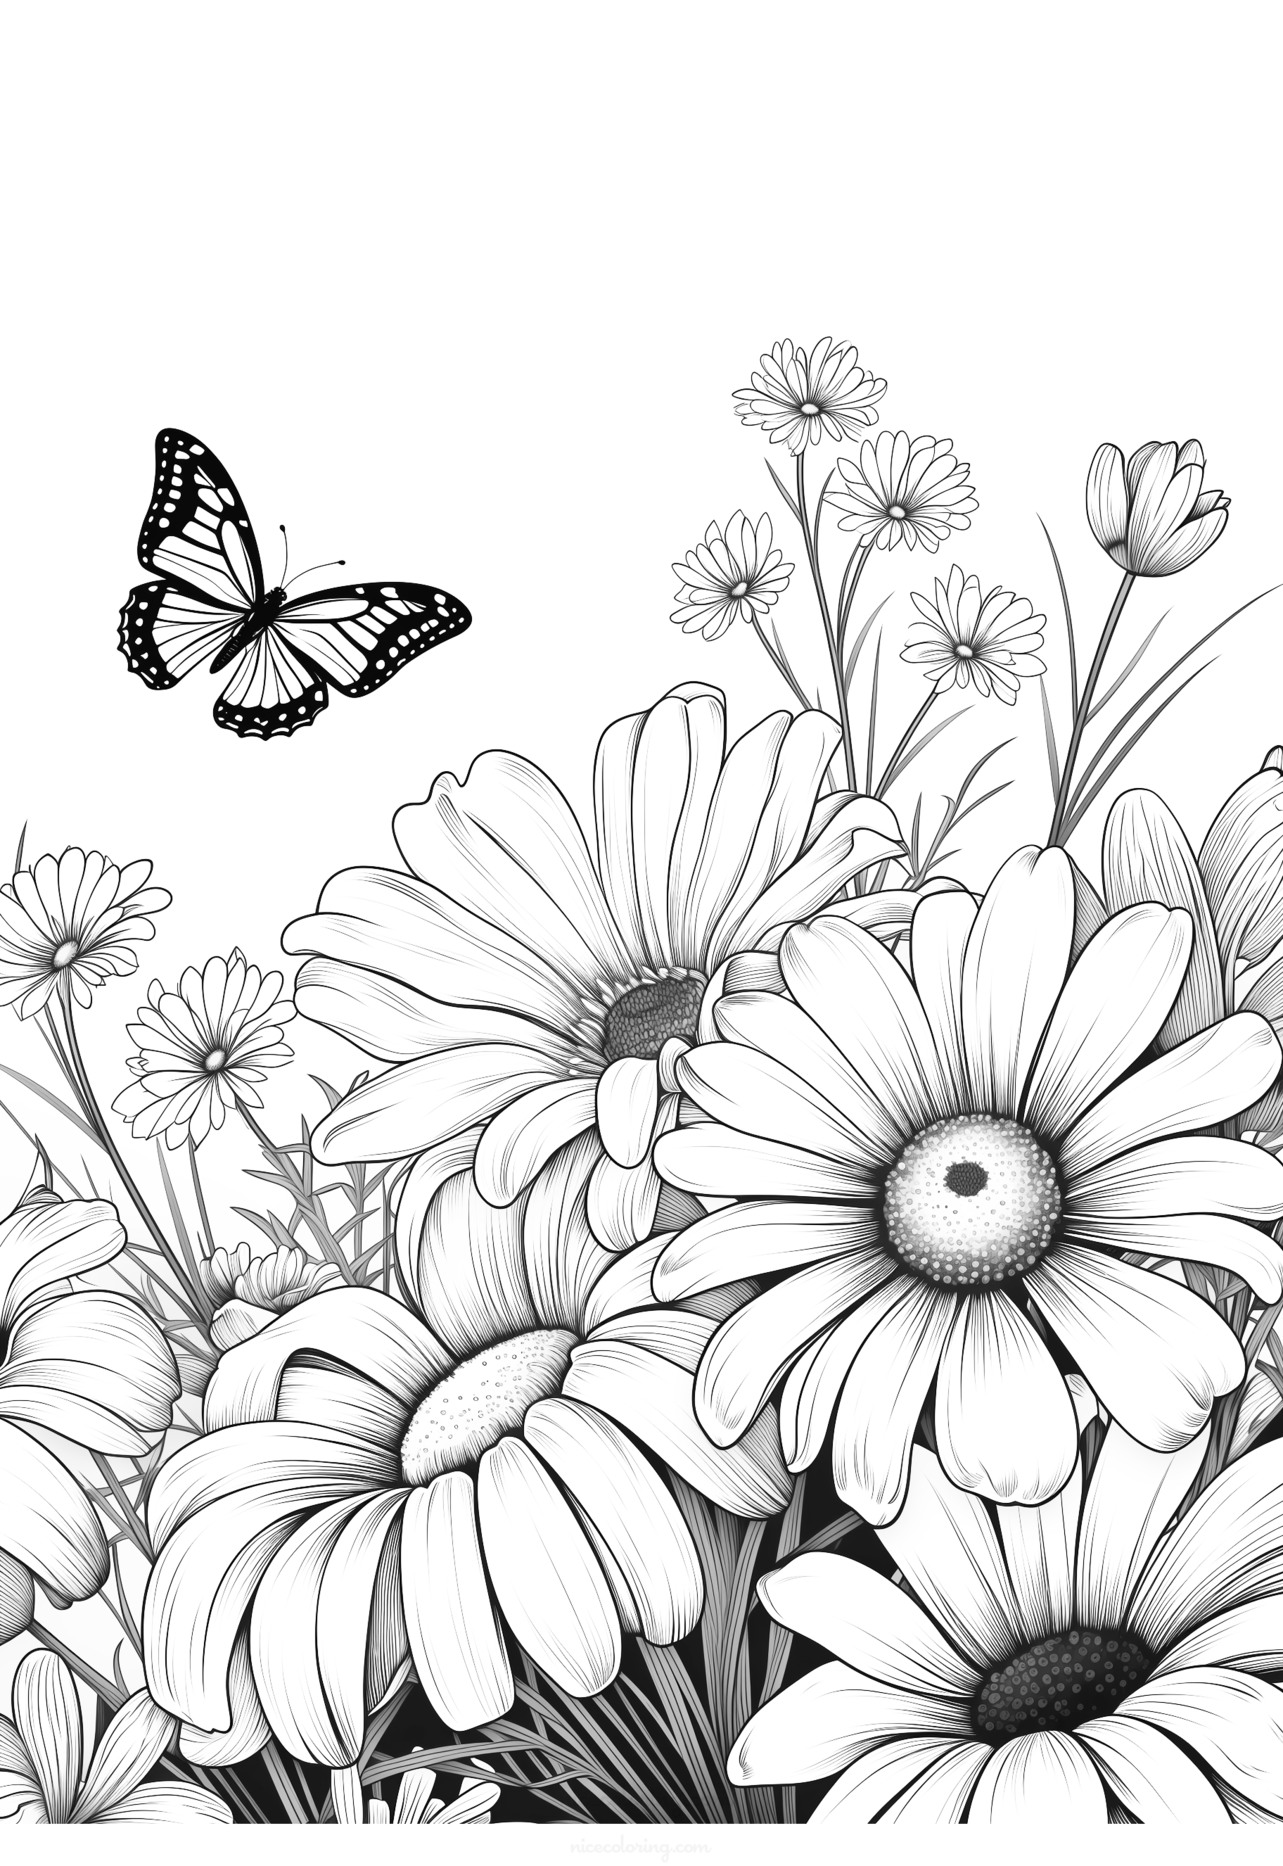 一只美丽的蝴蝶停留在花朵上的填色画